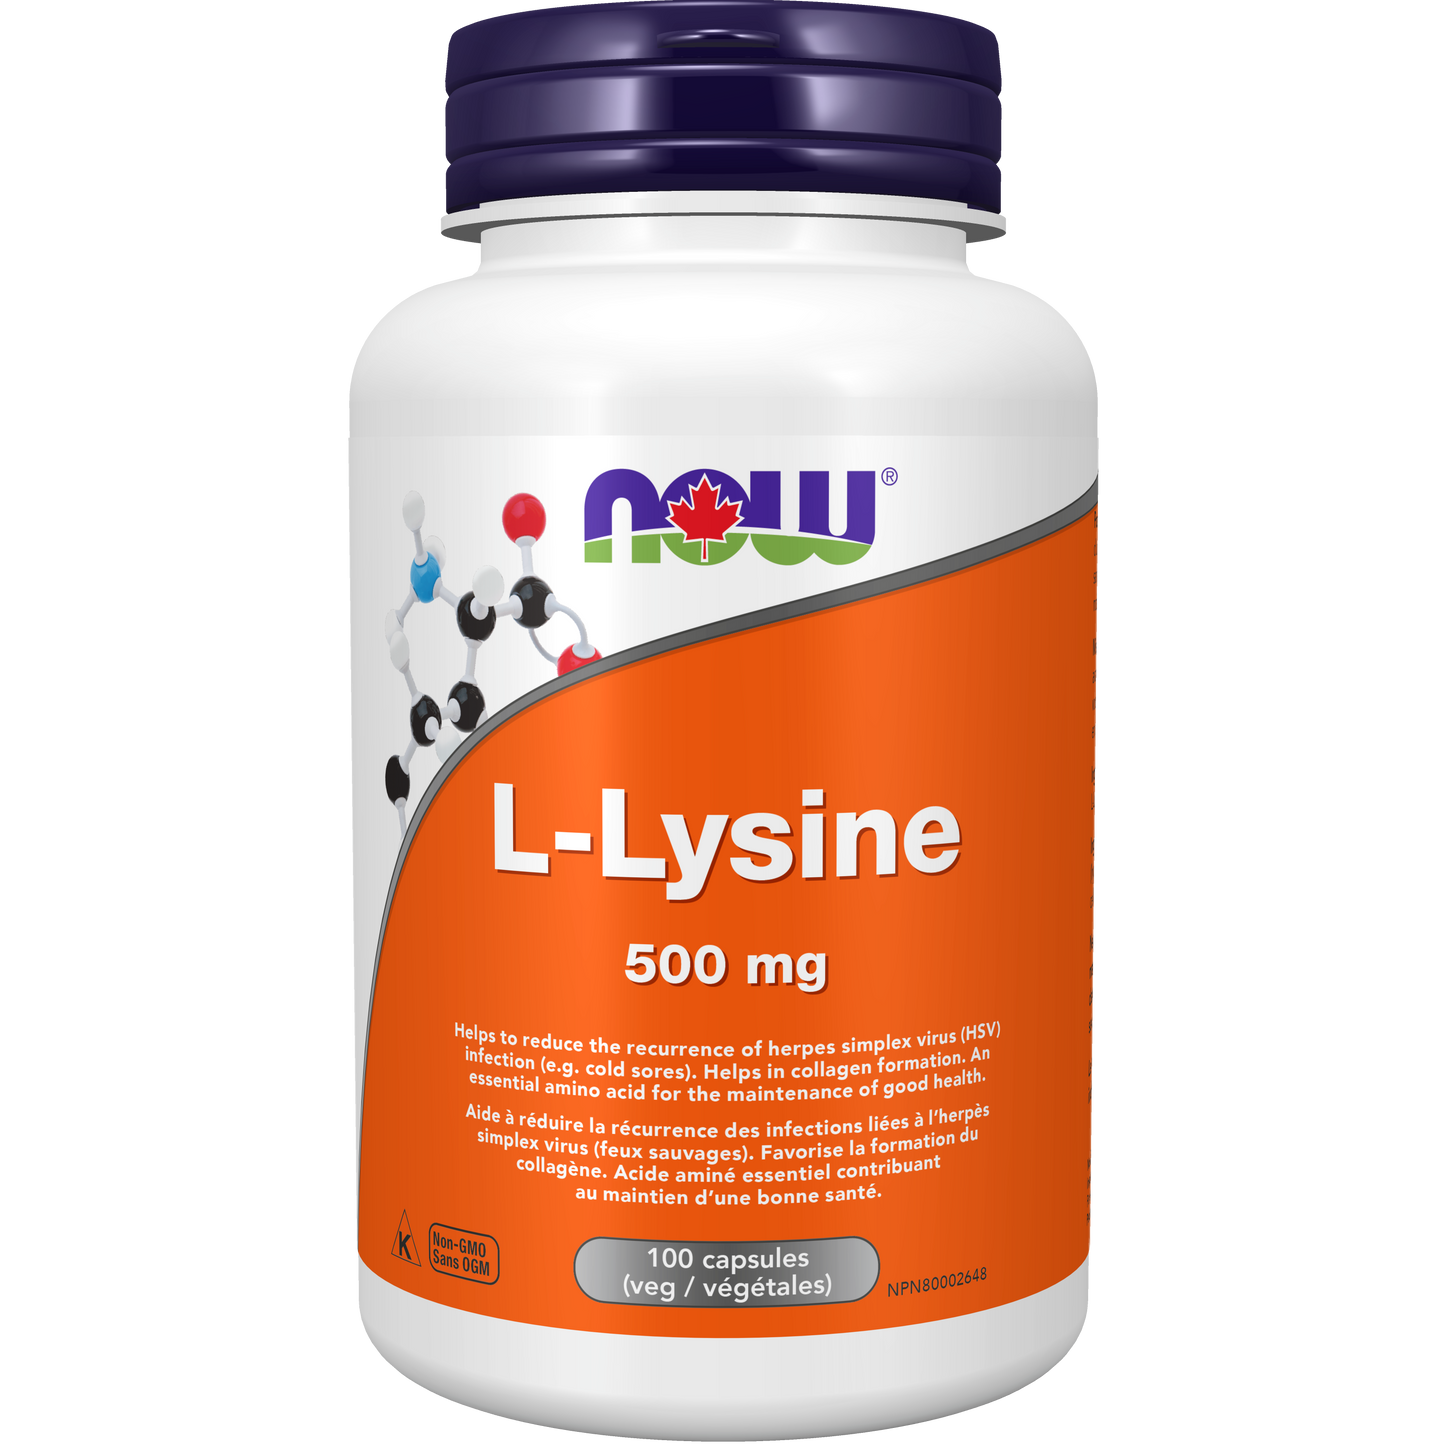 NOW L-Lysine